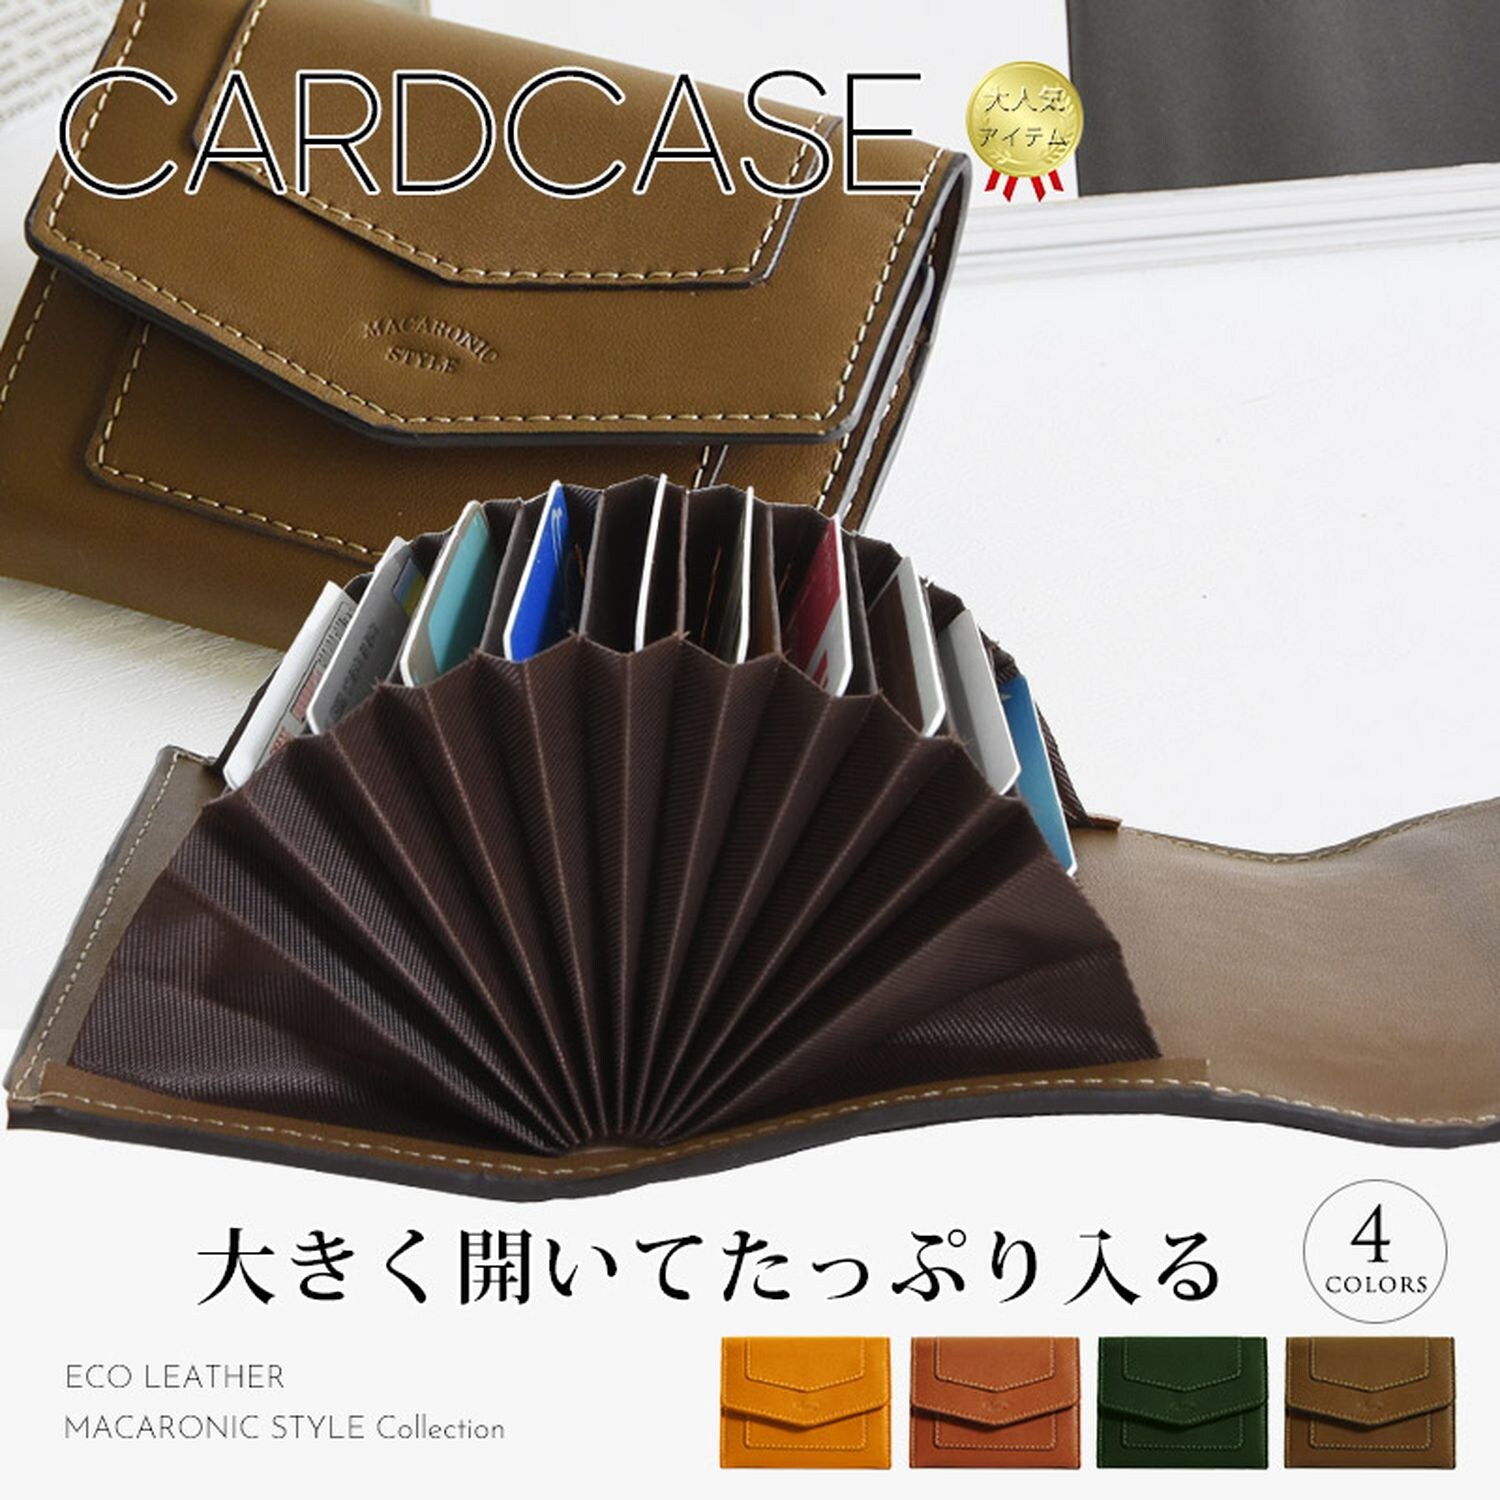 【マカロニックスタイル/MACARONIC STYLE】4色展開大きく開いてたっぷり入るカードケース